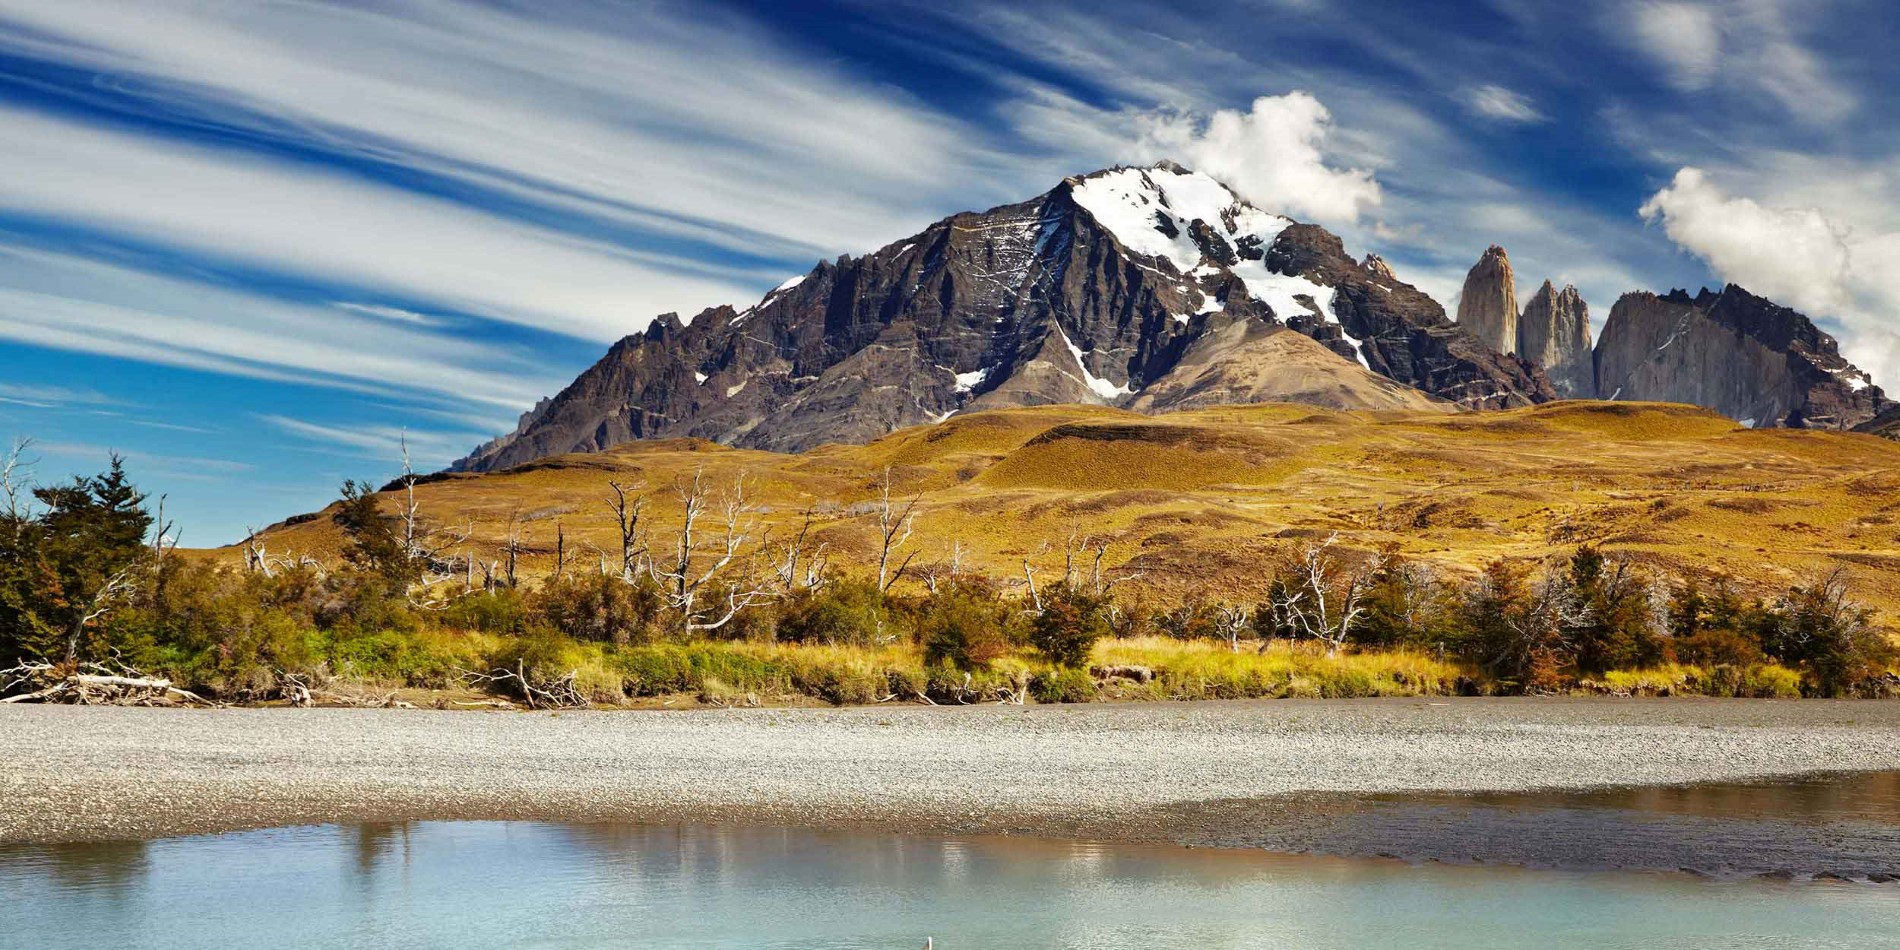 Patagonie, Chili